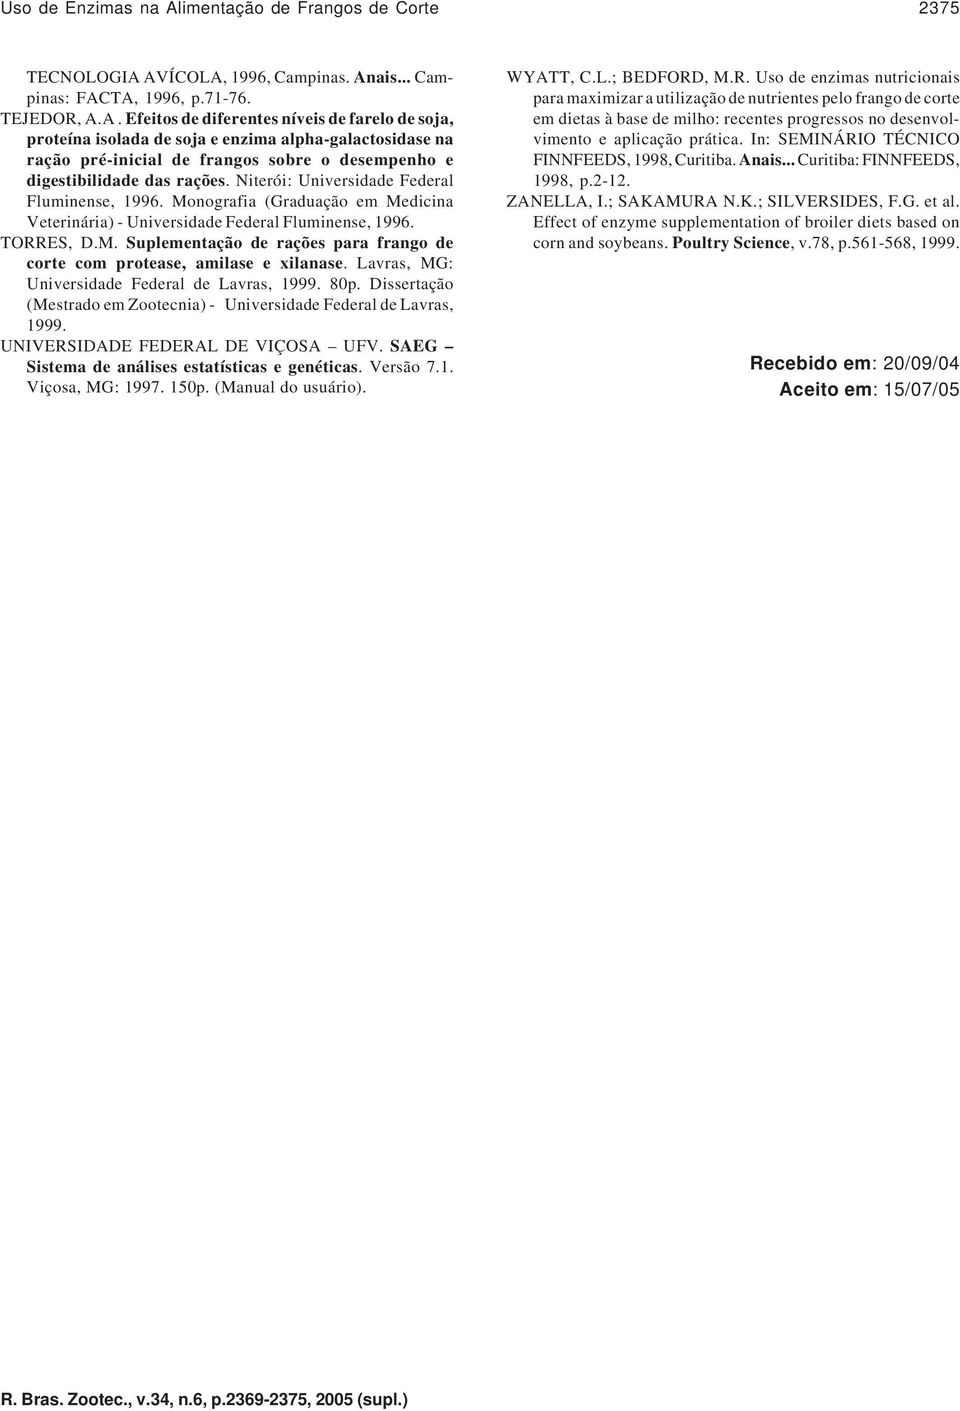 AVÍCOLA, 1996, Campinas. Anais... Campinas: FACTA, 1996, p.71-76. TEJEDOR, A.A. Efeitos de diferentes níveis de farelo de soja, proteína isolada de soja e enzima alpha-galactosidase na ração pré-inicial de frangos sobre o desempenho e digestibilidade das rações.